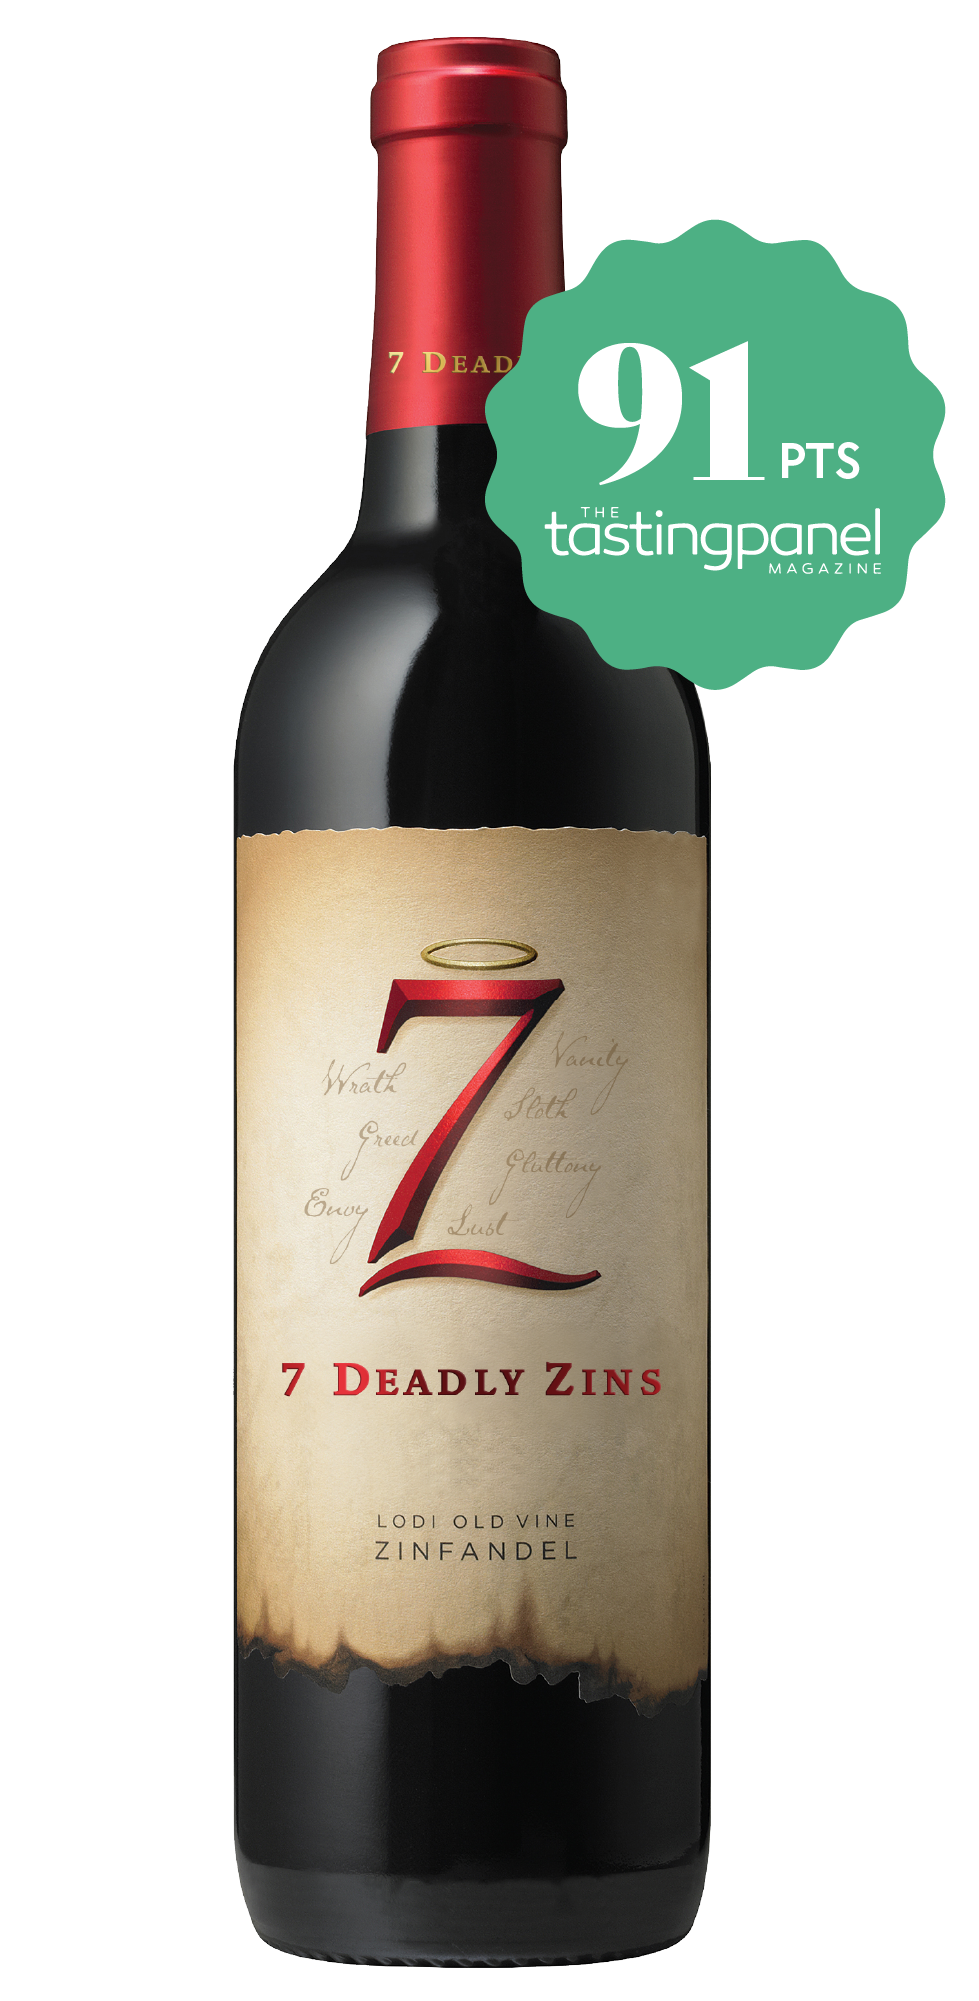 The Seven Deadly Zins Zinfandel Old Vine 2017